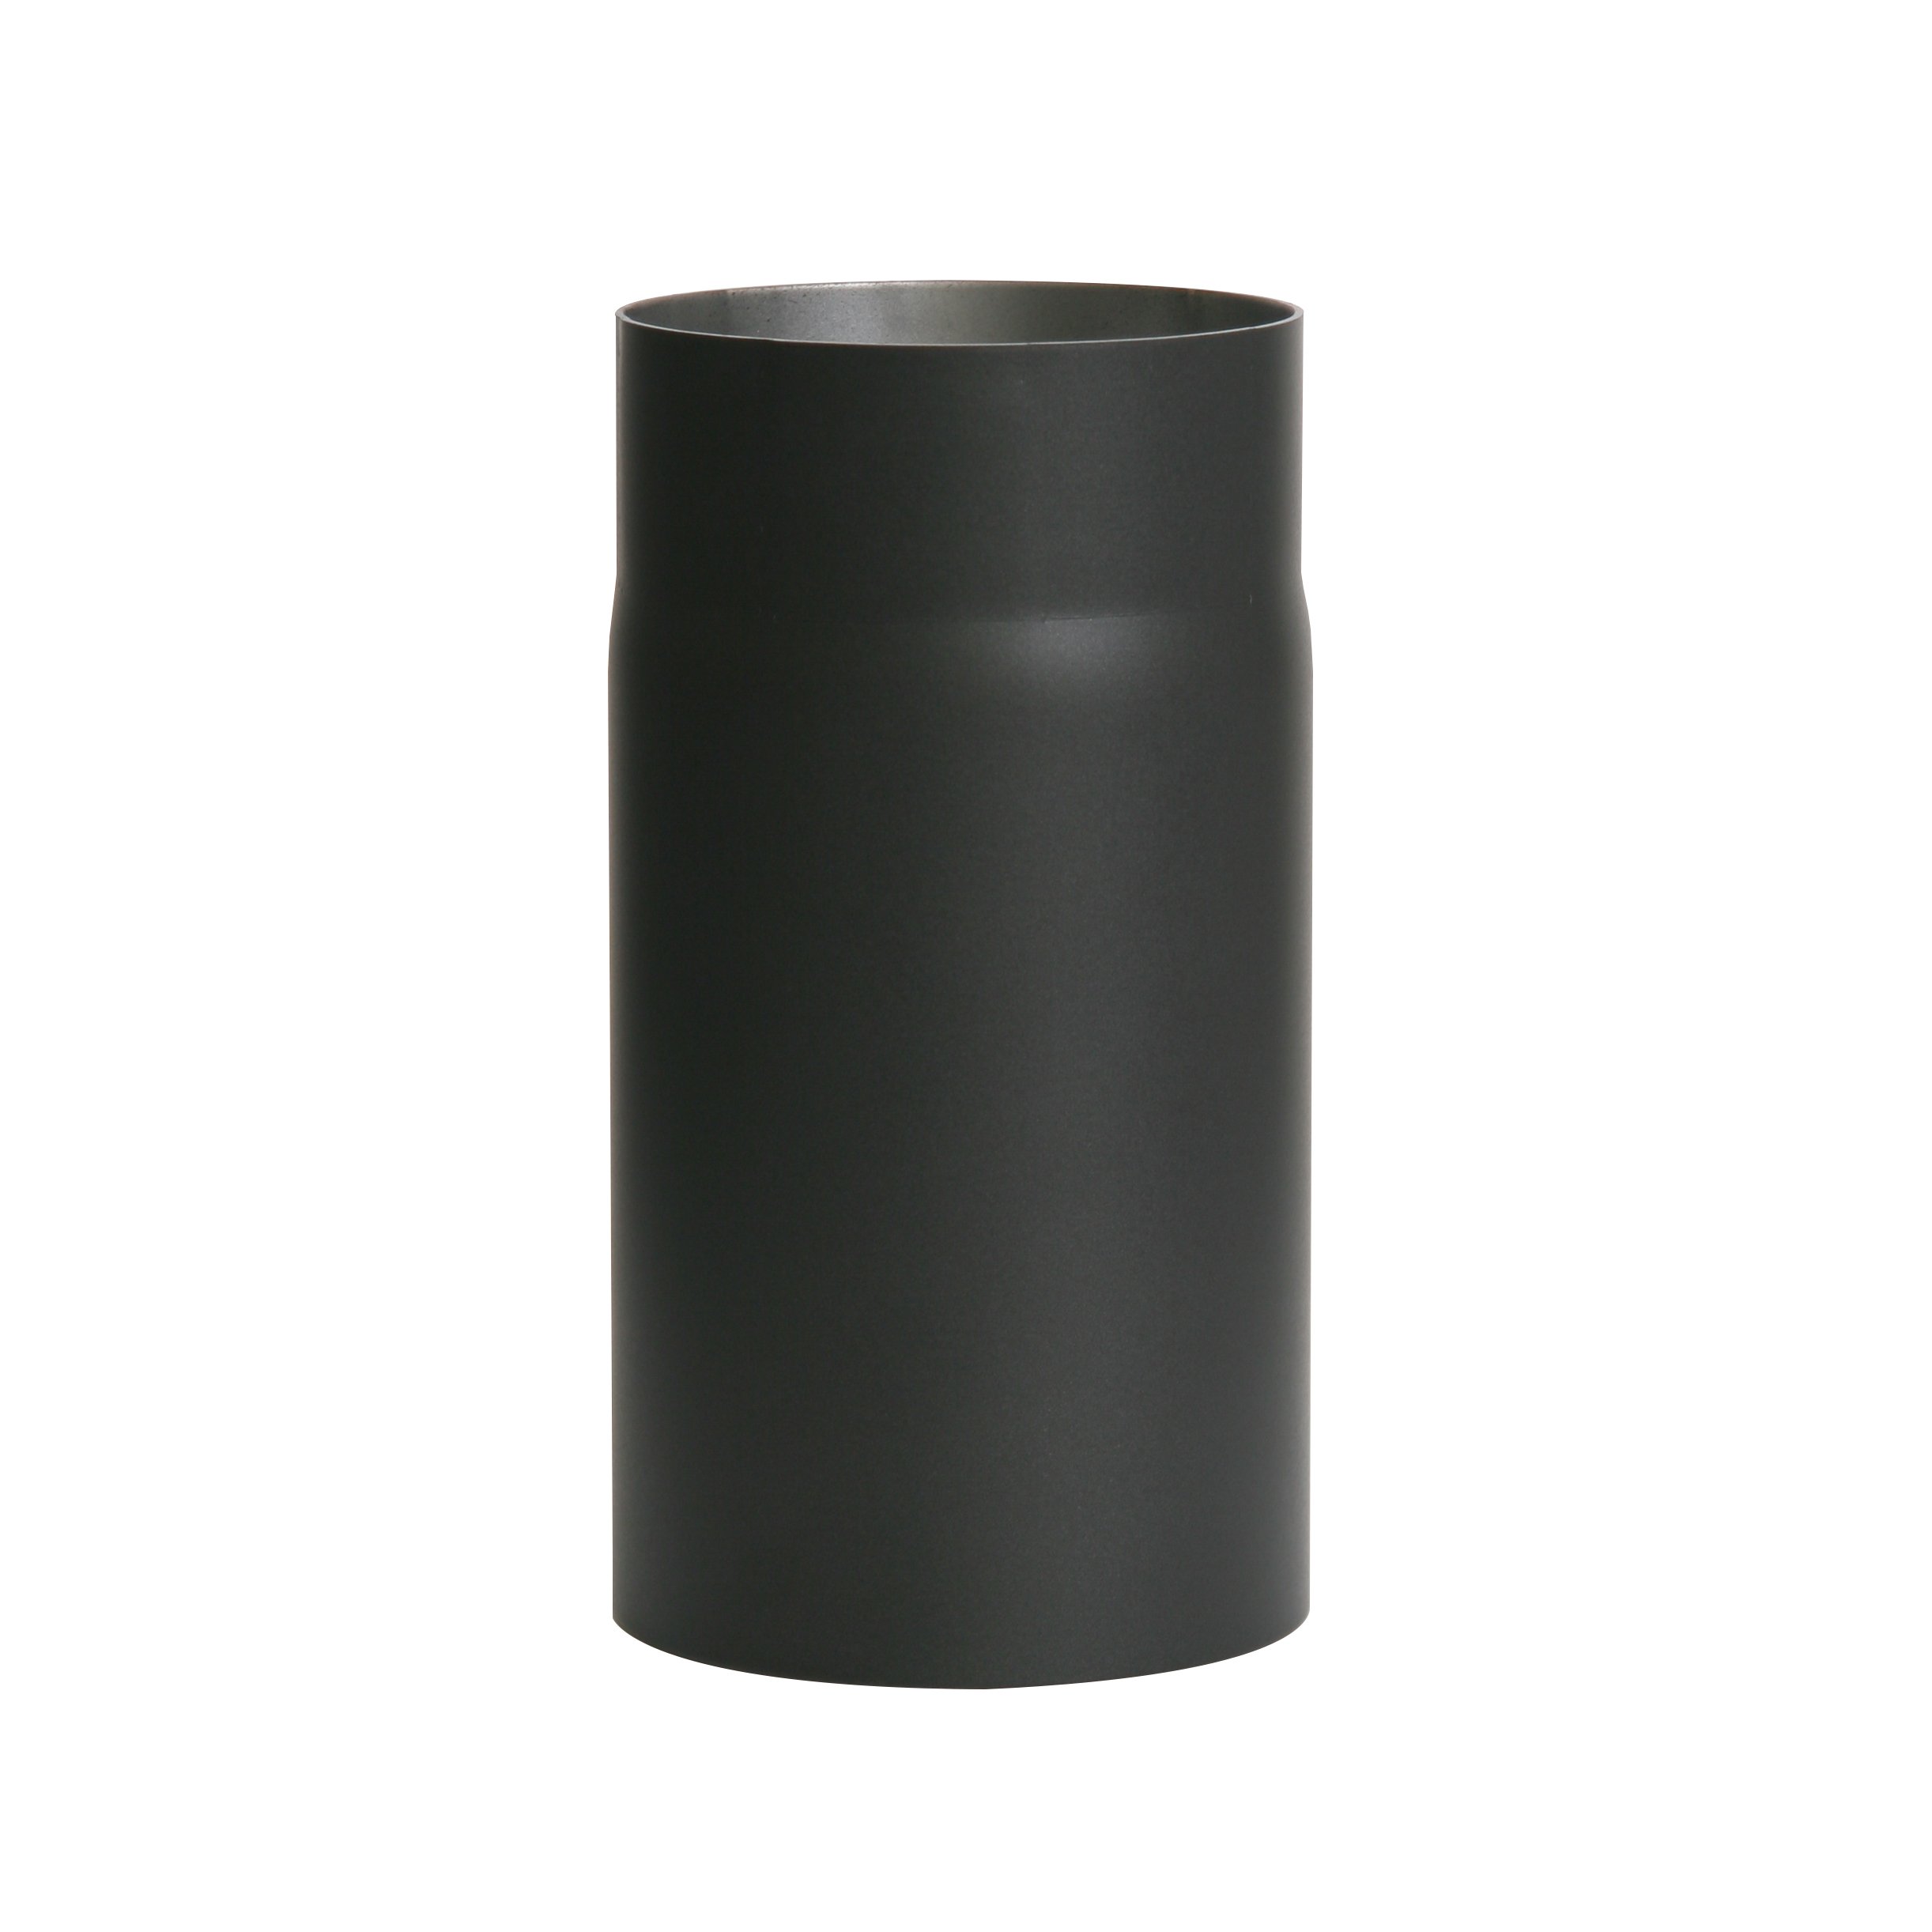 Ofenrohr Senotherm® 2 mm Ø 130 mm hitzebeständig lackiert, gerade - Rauchrohr, Kaminrohr schwarz - für Pellettofen und Kamine - Länge: 250 mm